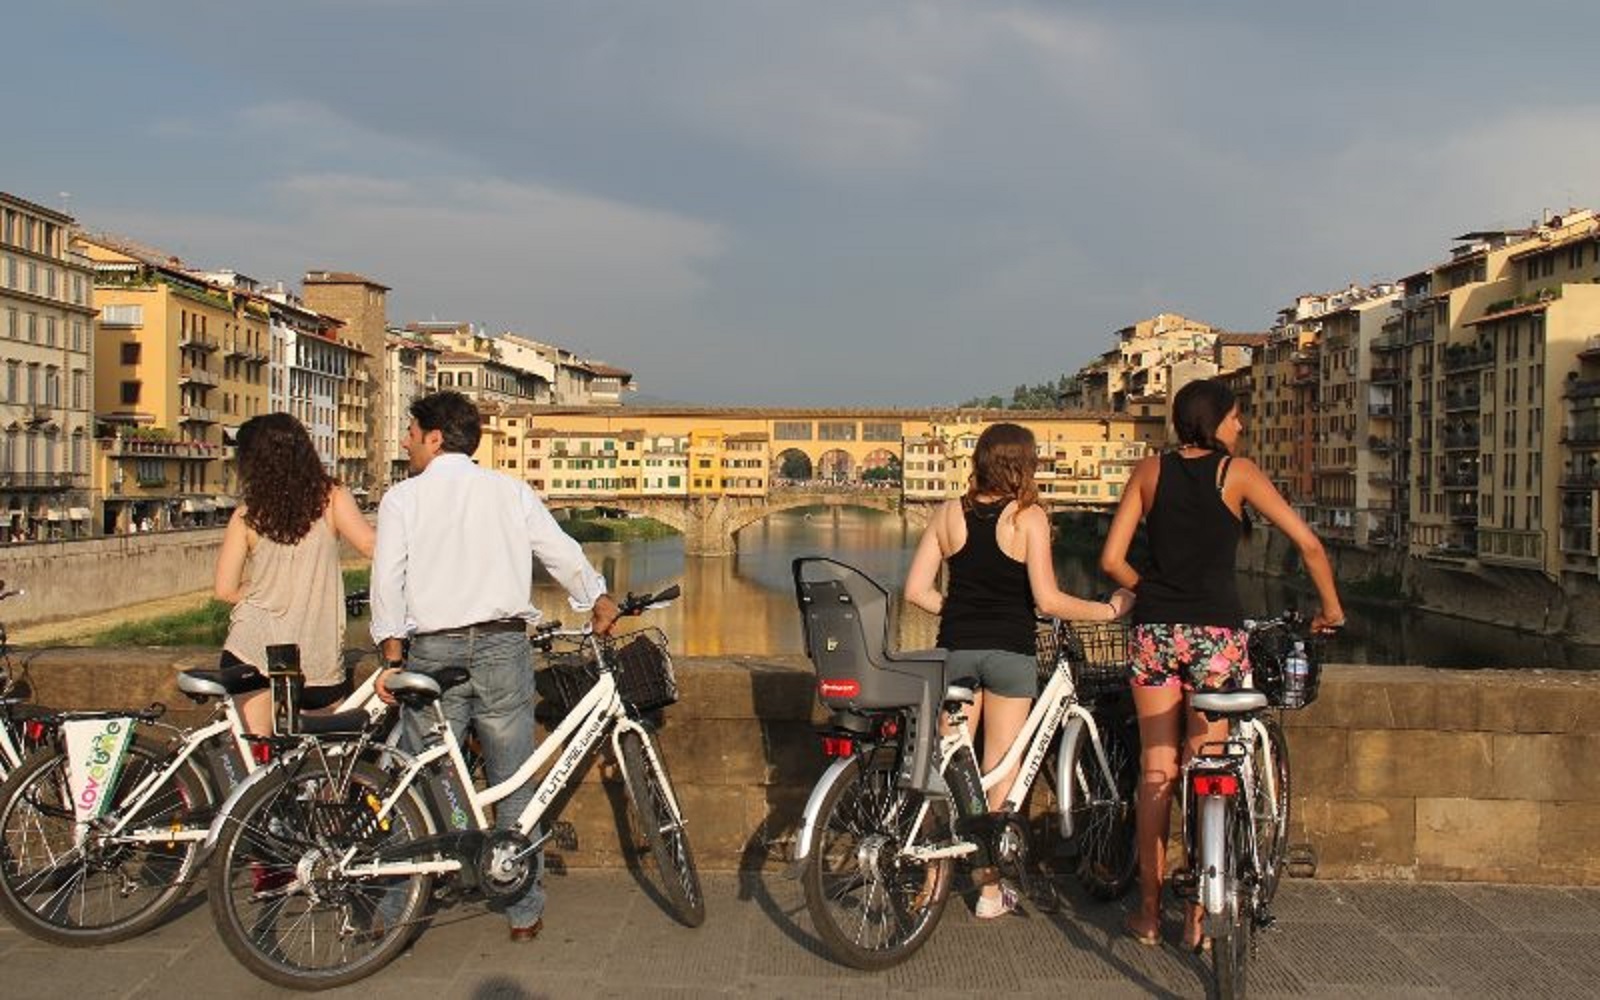 Descubre Florencia desde una perspectiva diferente en un tour en bicicleta de 2 horas por sus lugares icónicos